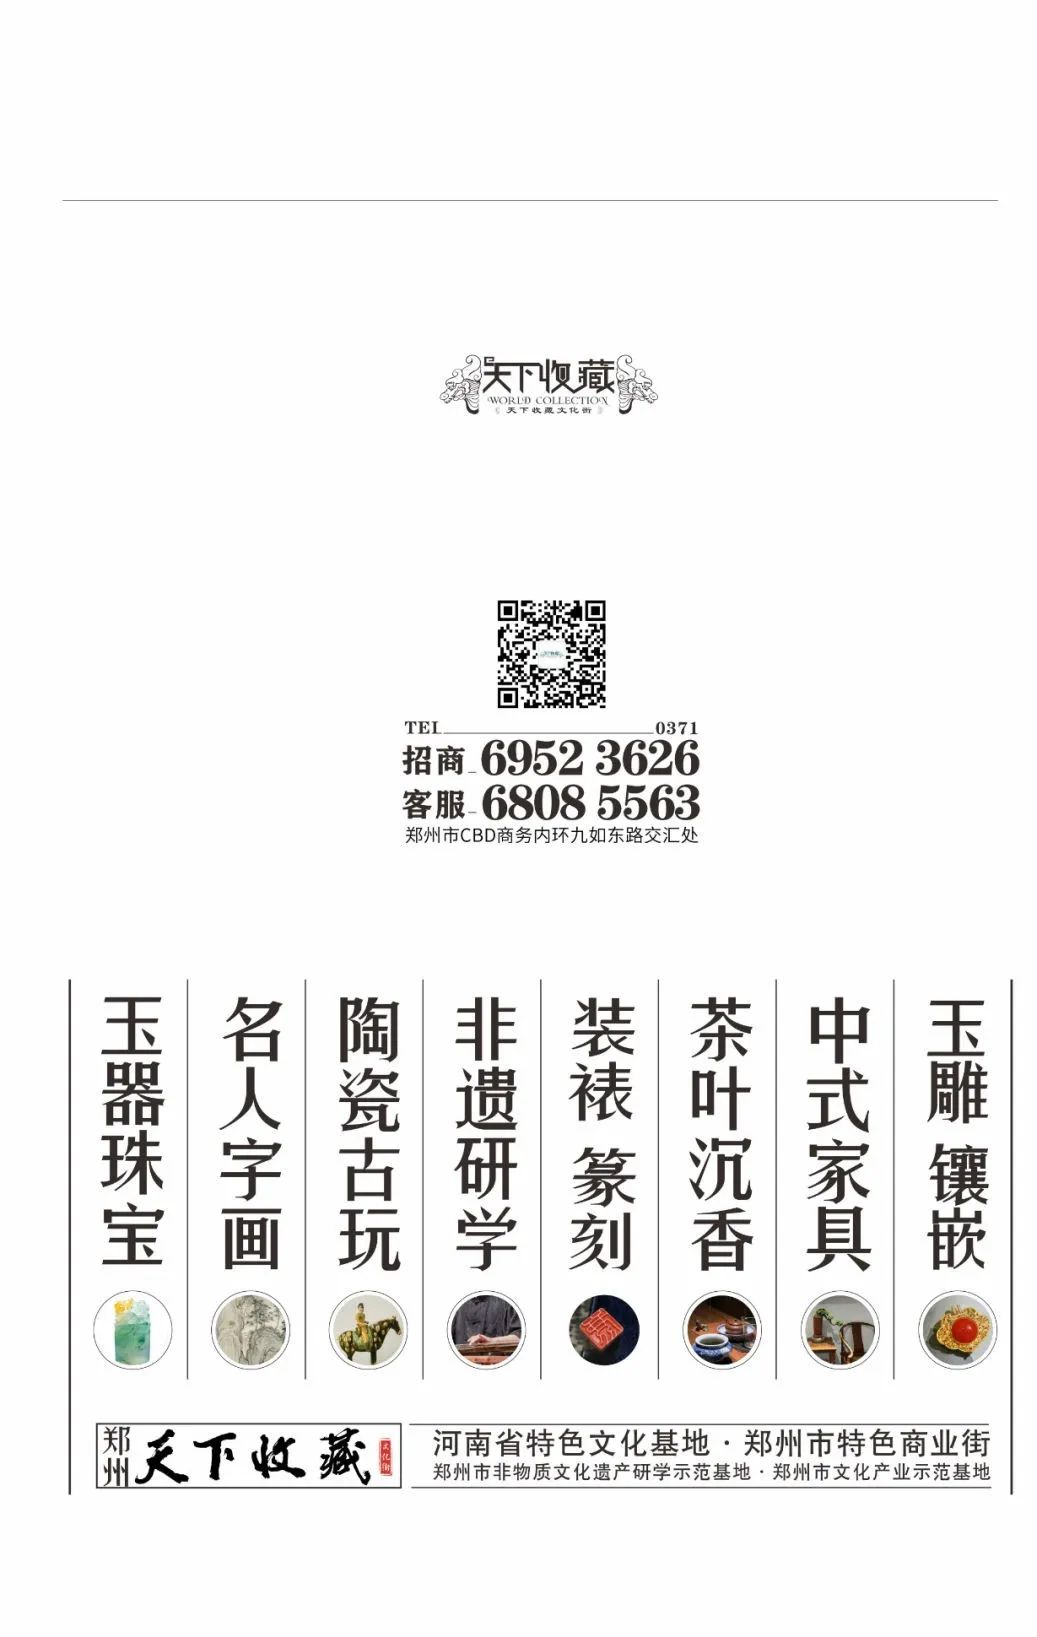 藏·展览丨第一届郑州市工艺美术大师作品展暨手工艺精品展12月8日亮相(图15)